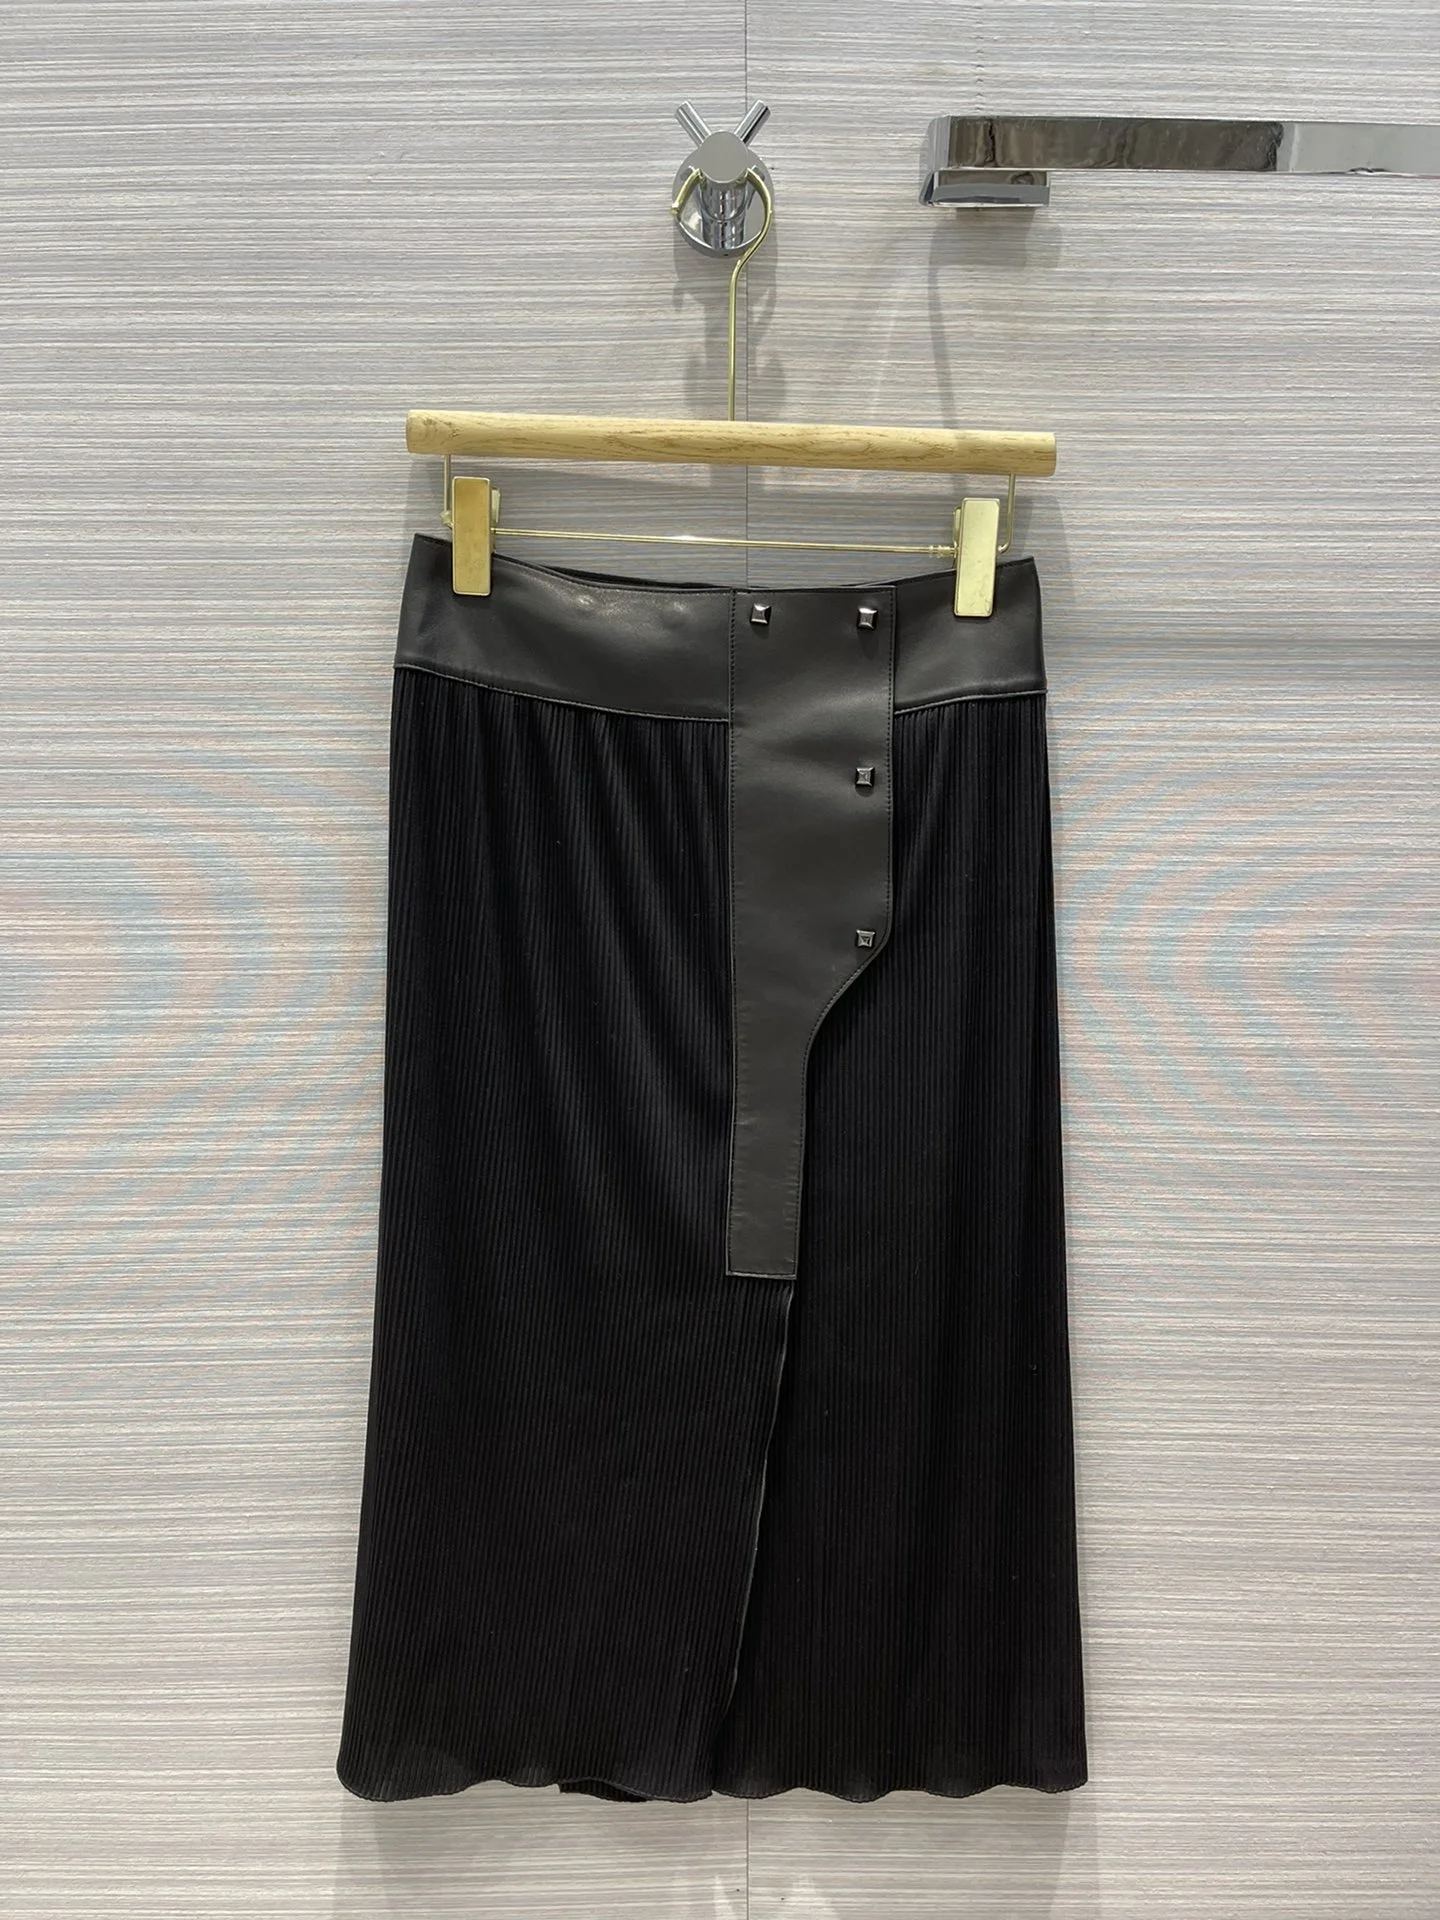 

Женская юбка из овечьей кожи, черная комбинированная юбка с высокой талией, с 3D разрезом, осень 2021